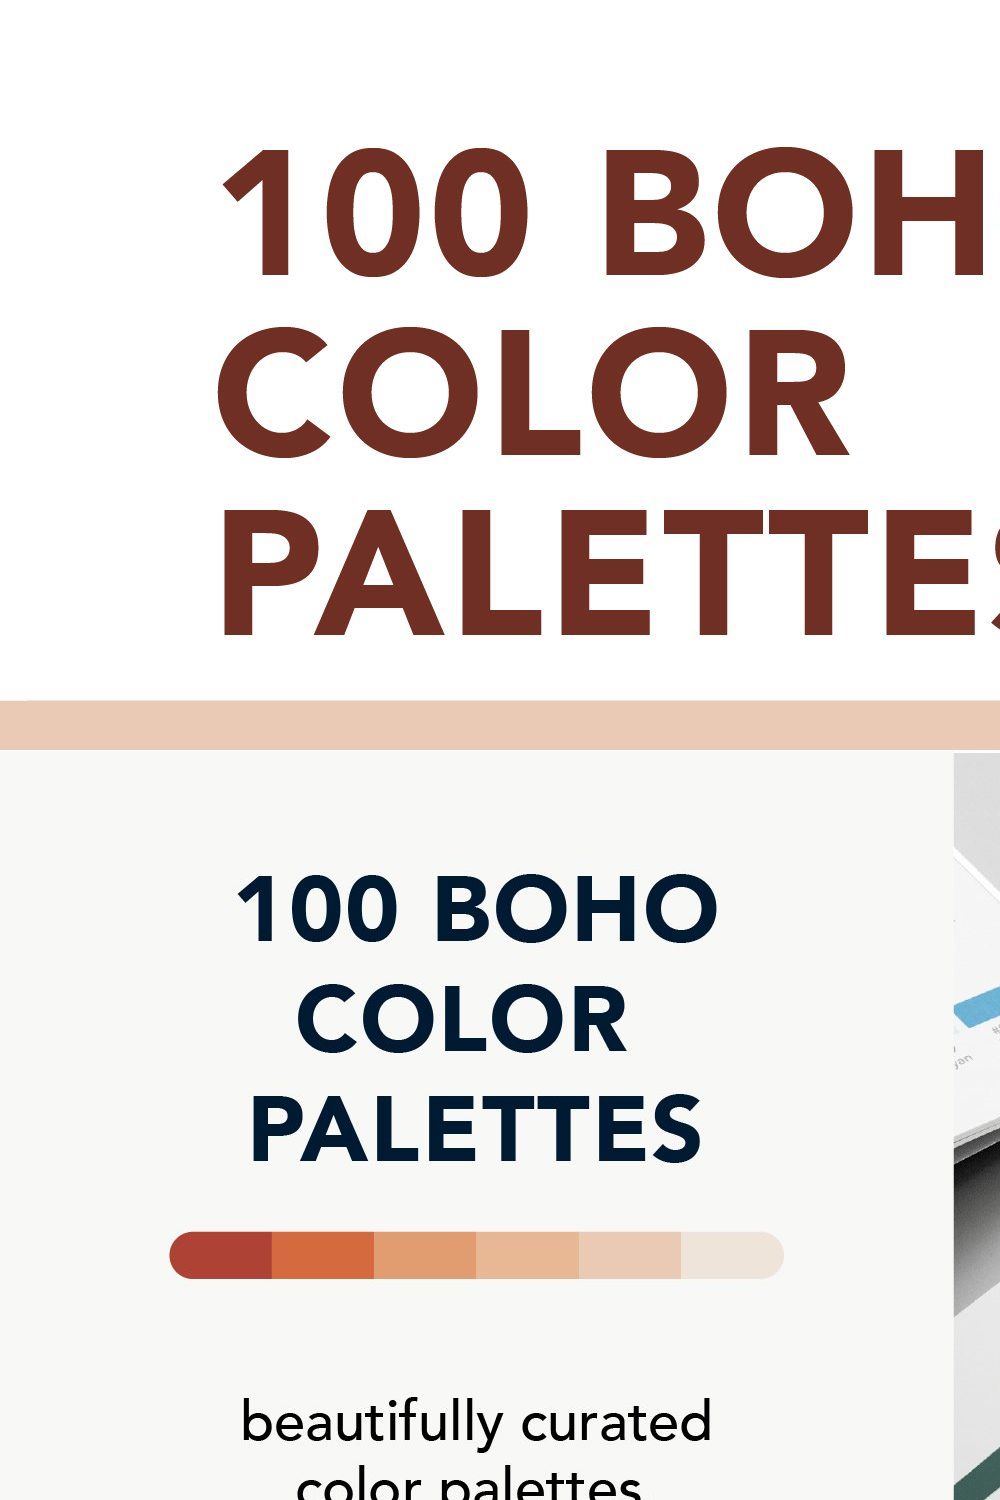 100 Boho Color Palettes pinterest preview image.